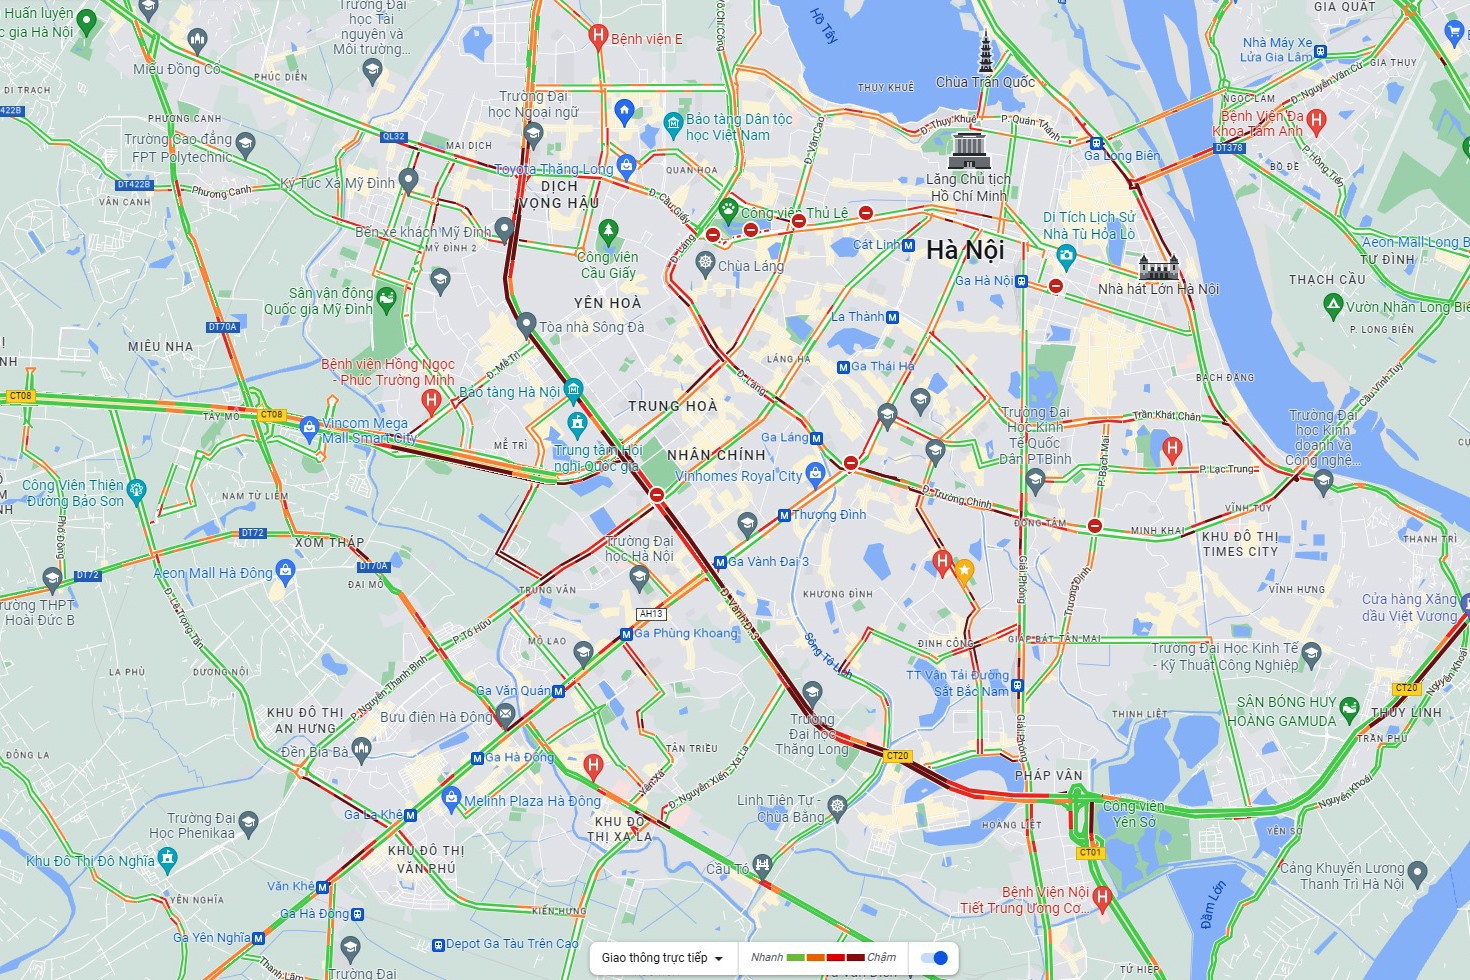 18h30: Quan sát trên bản đồ giao thông, hầu hết tất cả các tuyến đường của Thủ đô đều rơi vào tình trạng ùn tắc